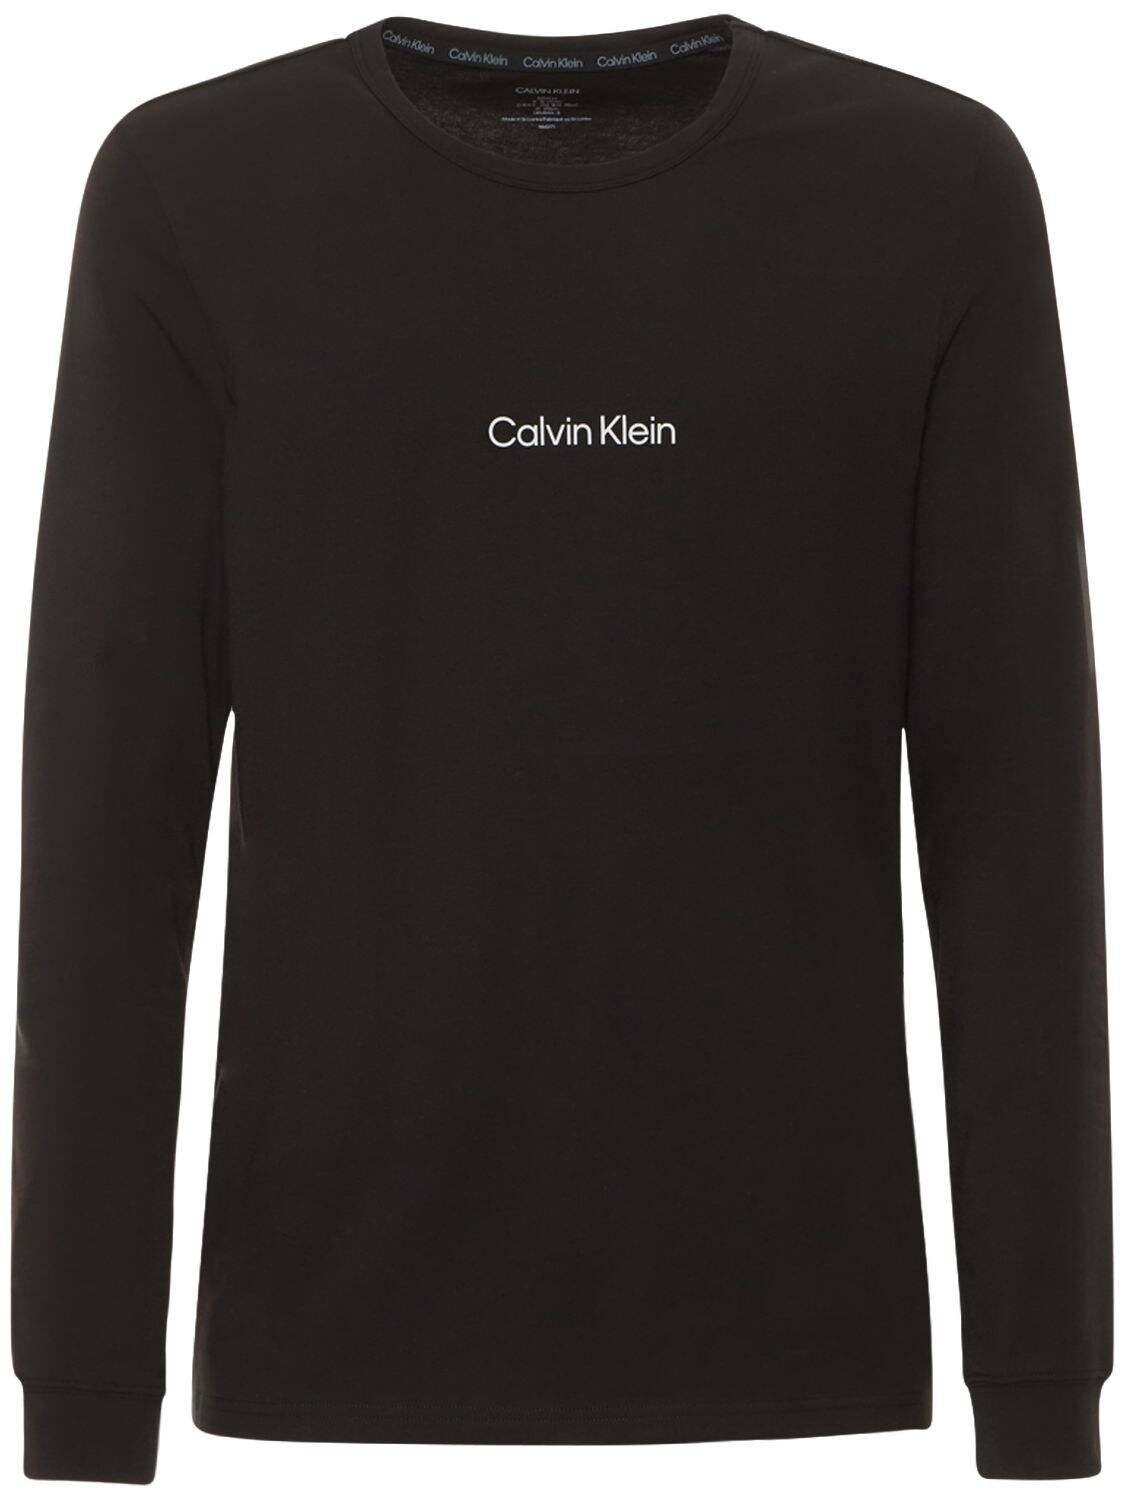 Langärmeliges T-shirt Aus Baumwollmix Mit Logo - CALVIN KLEIN UNDERWEAR - Modalova